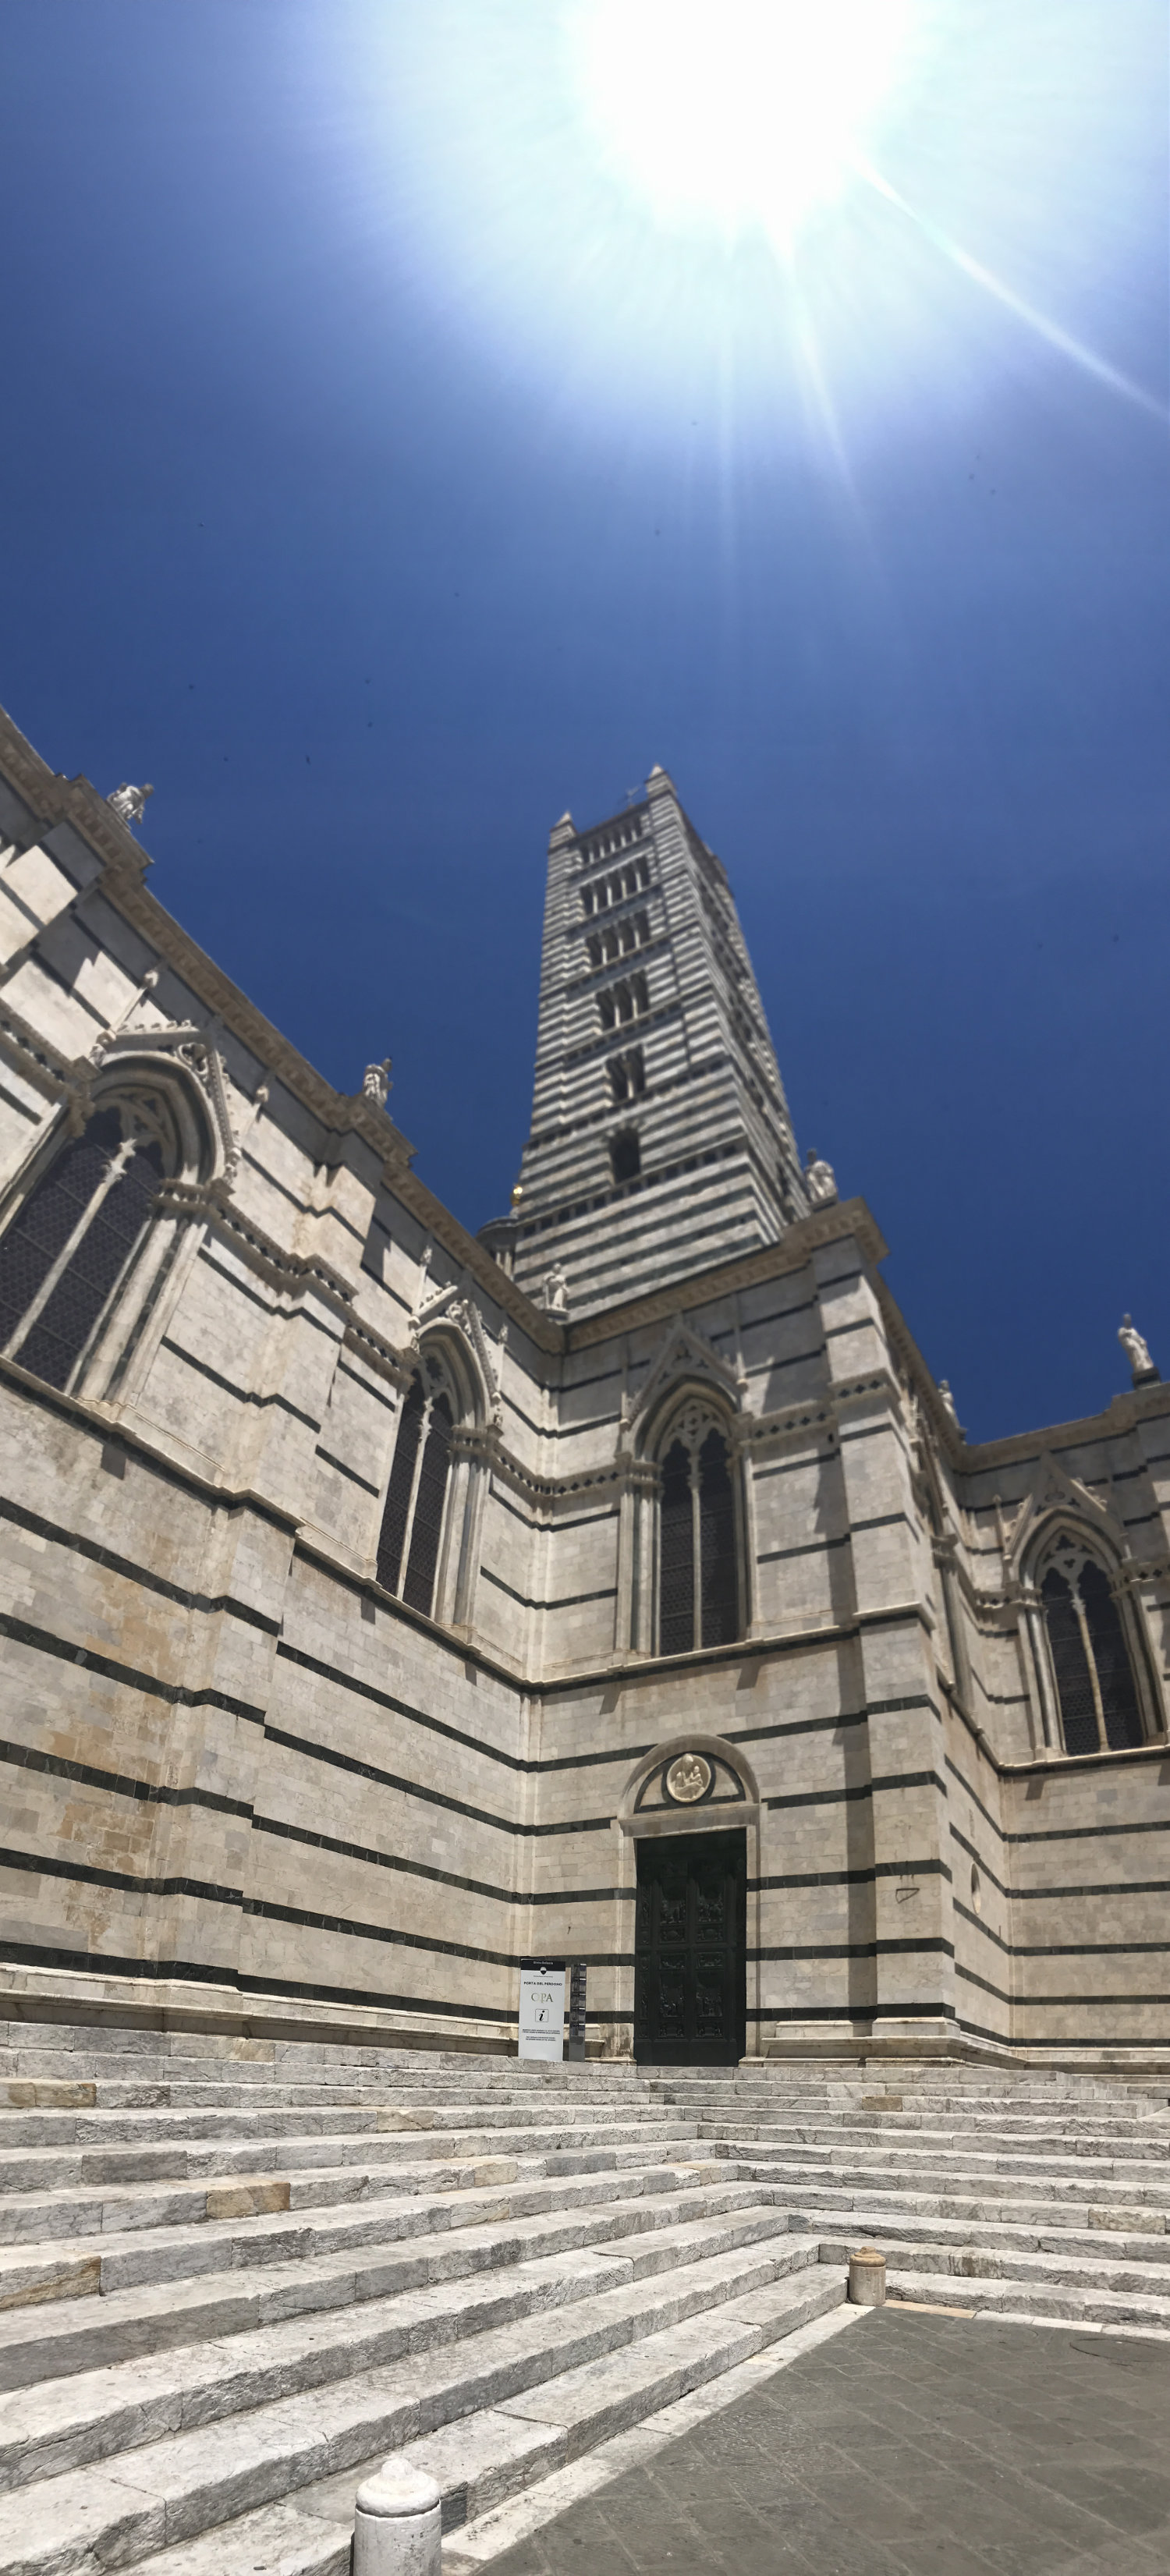 Siena's Duomo Tower